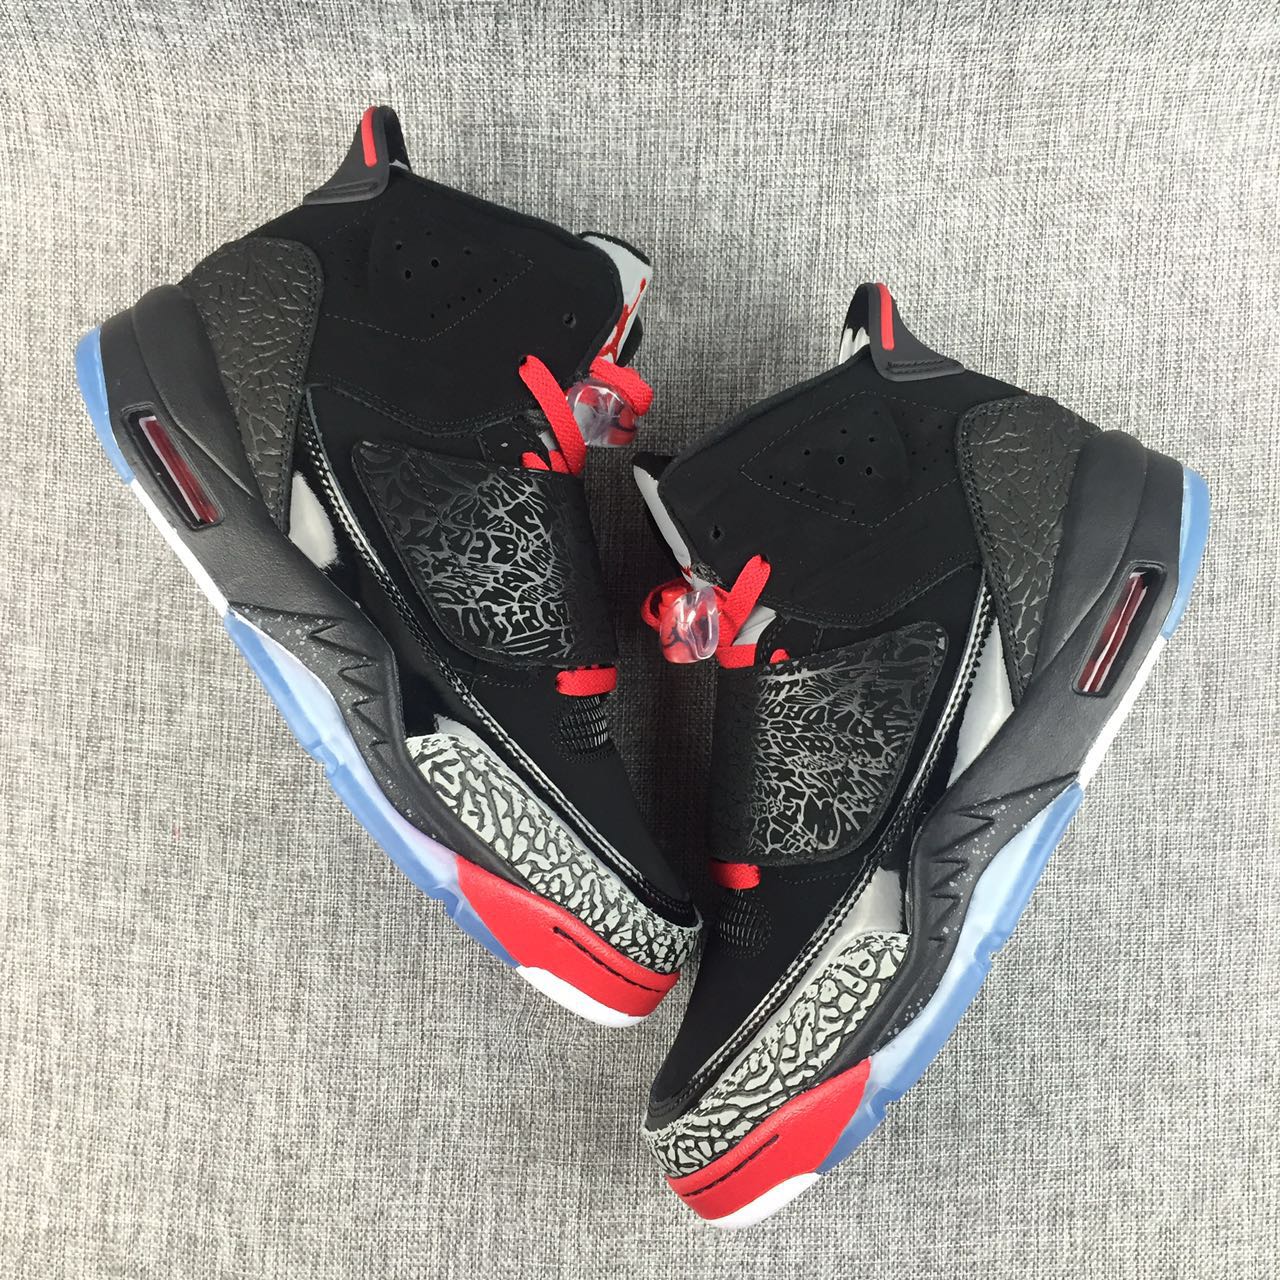 New Air Jordan 5.5 Black Red Shoes